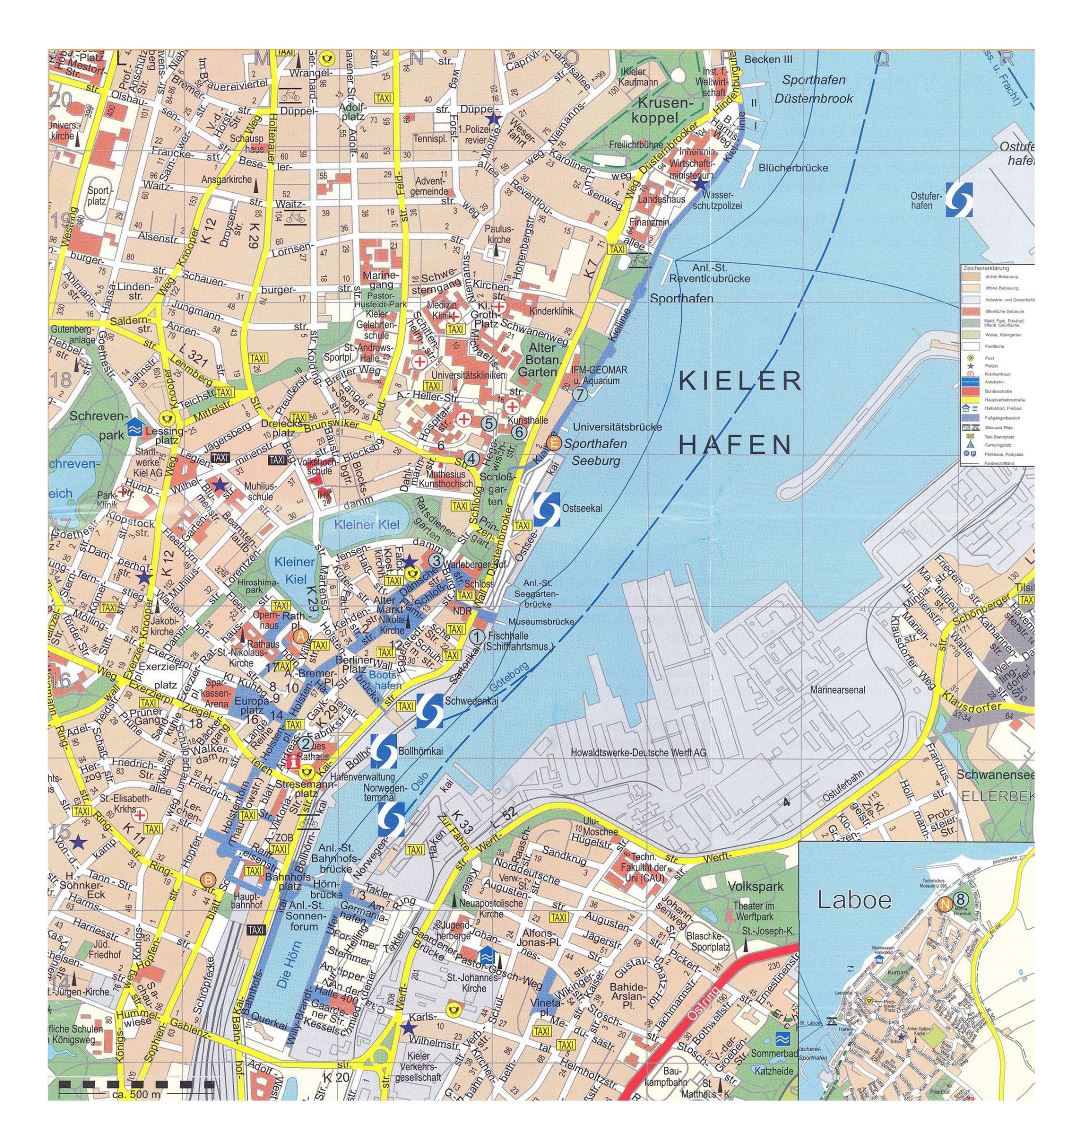 Mapa grande turística detallada de la parte central de la ciudad de Kiel